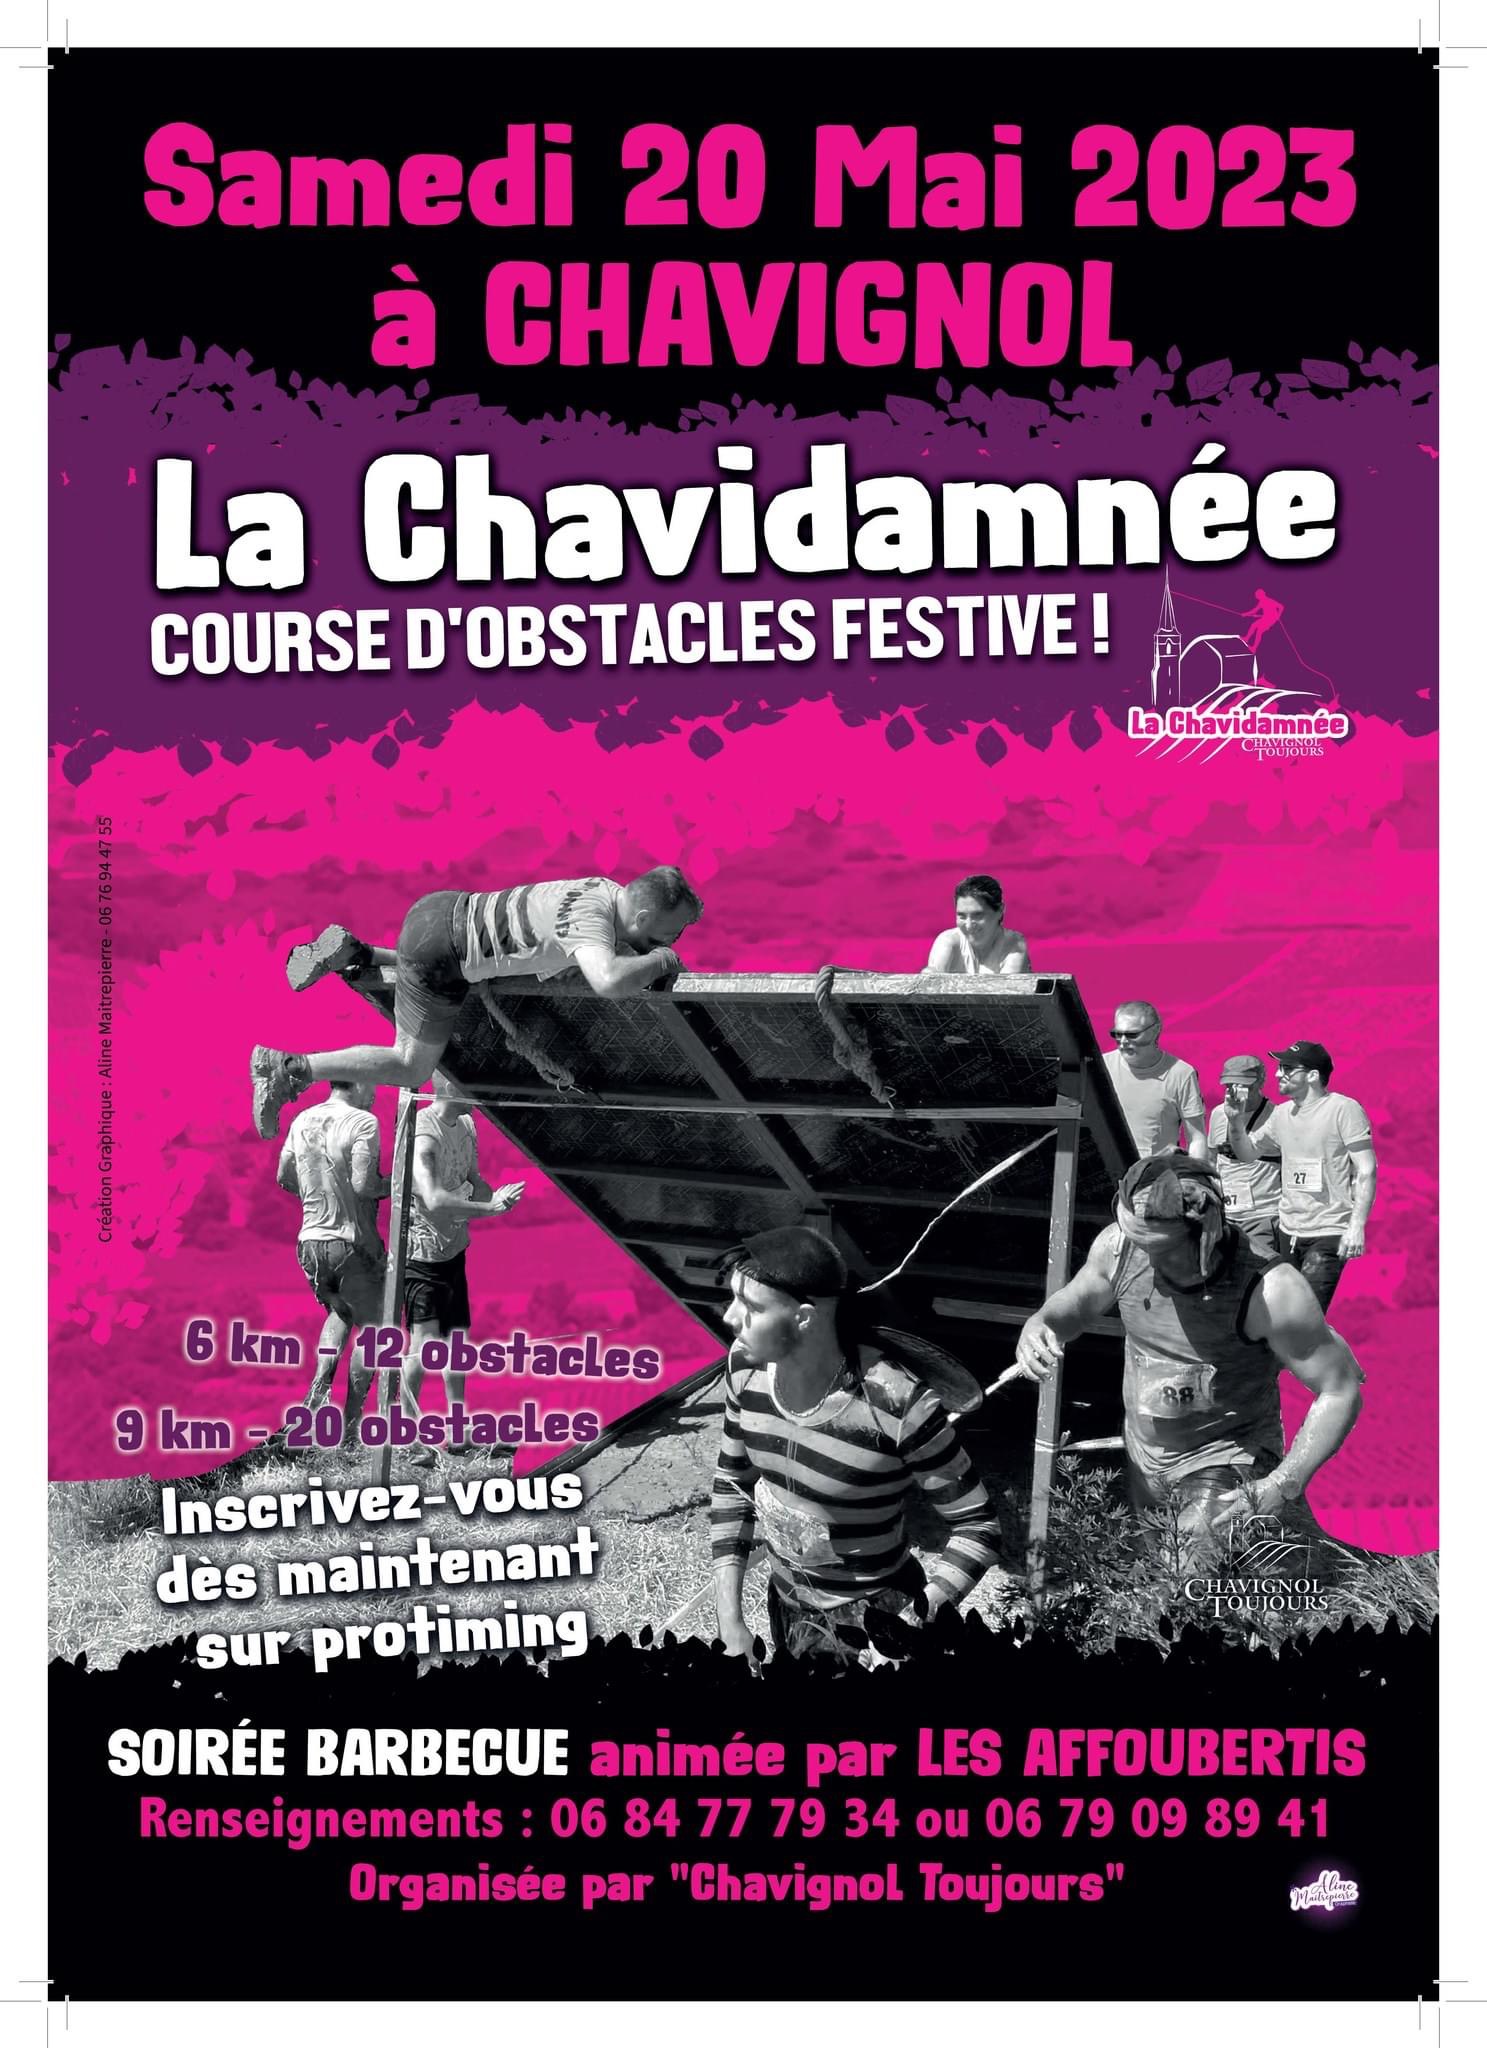 La Chavidamnée : course d’obstacles festive!©